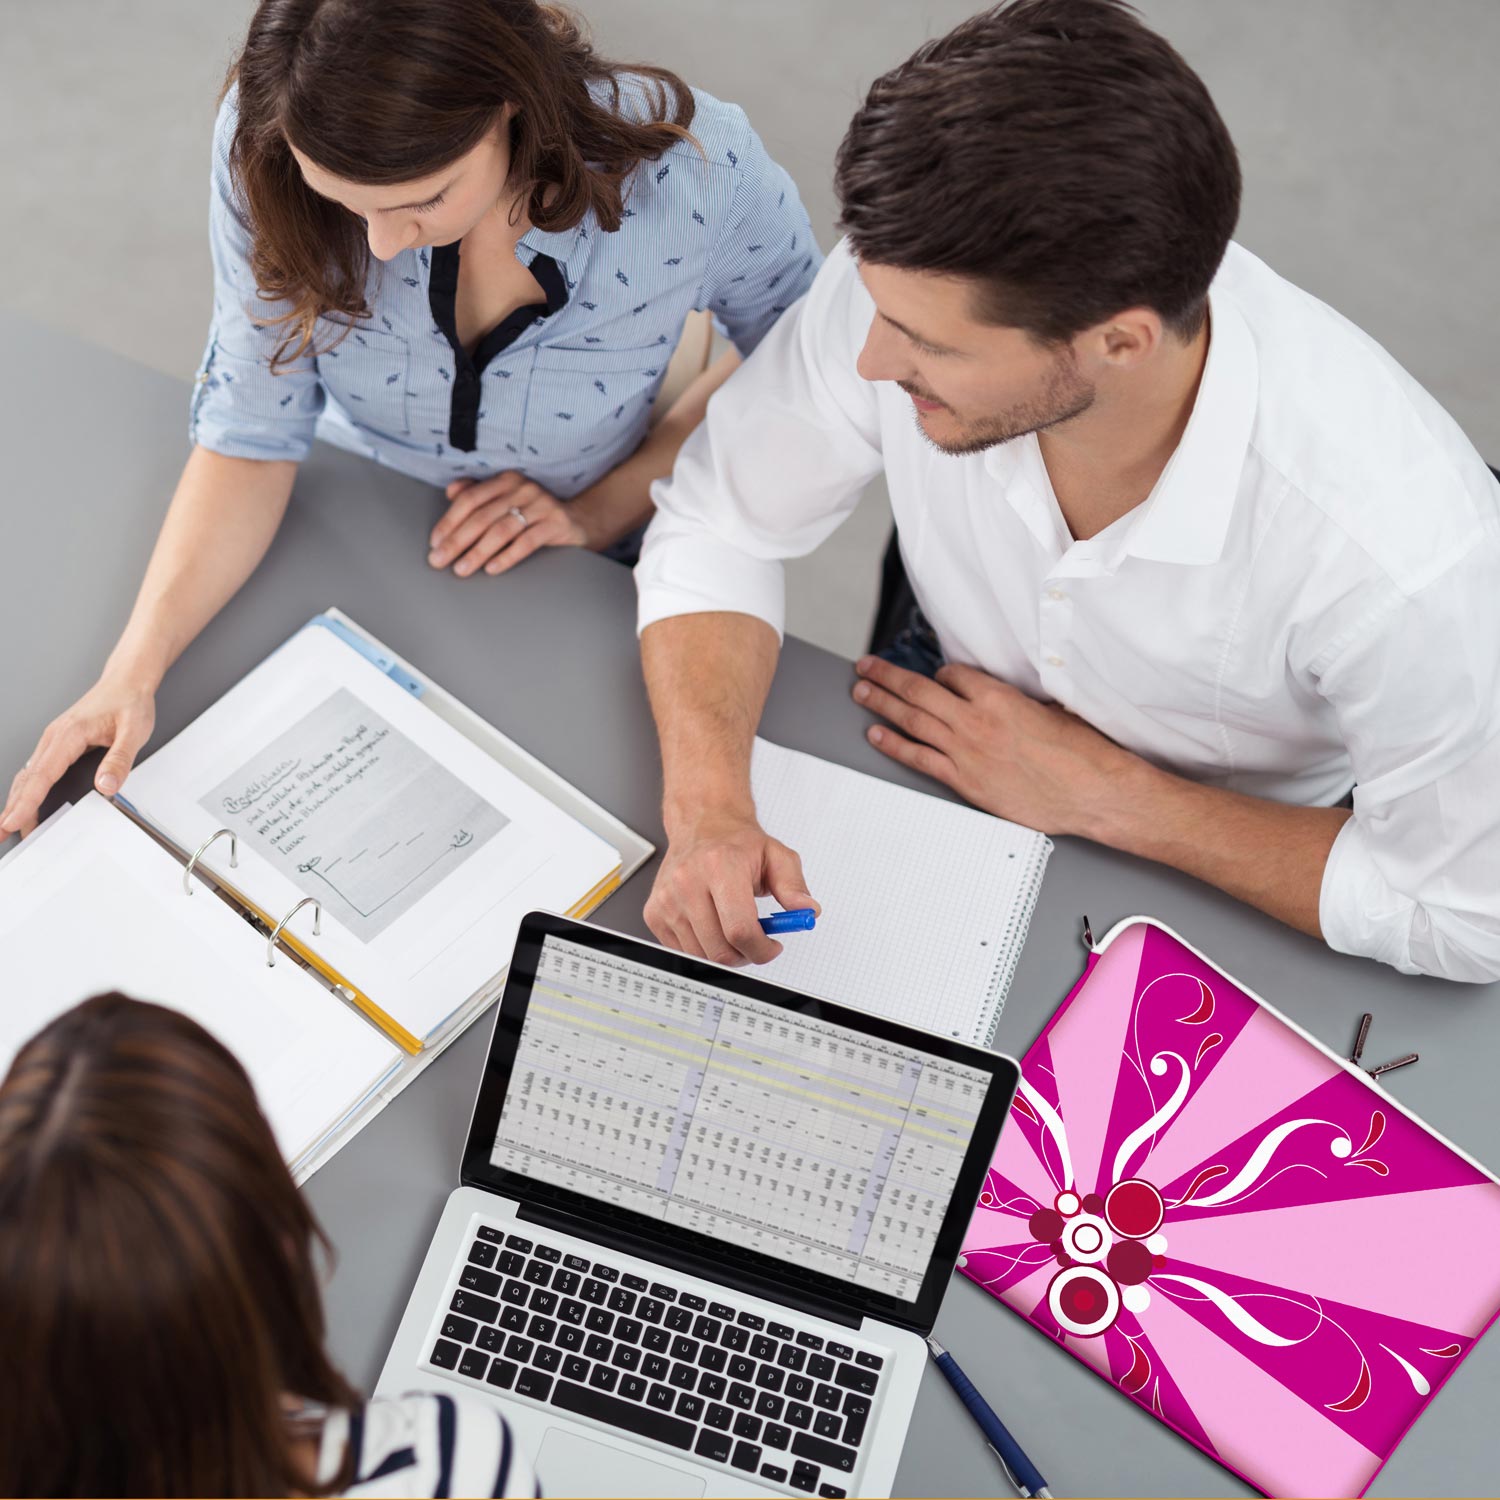 LS155 Magic Rays Laptop Schutzhülle in pink als Business-Zubehör im Büro, bei Kunden und auf Dienstreisen